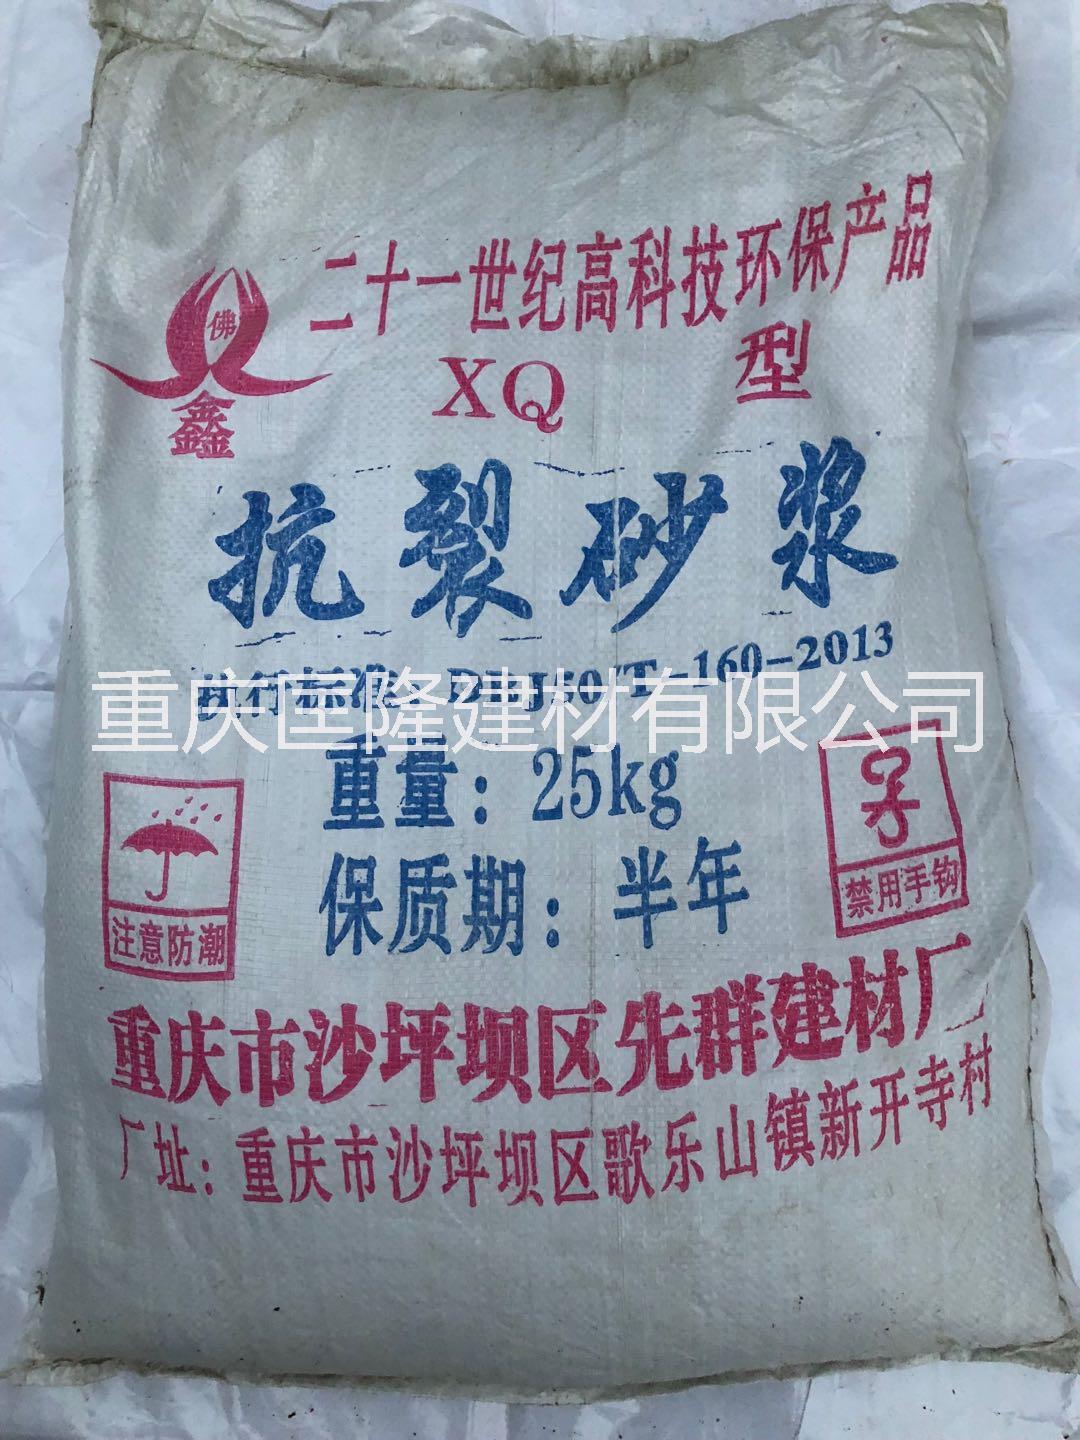 重庆聚合物抗裂砂浆批发 厂家专业生产抗裂砂浆